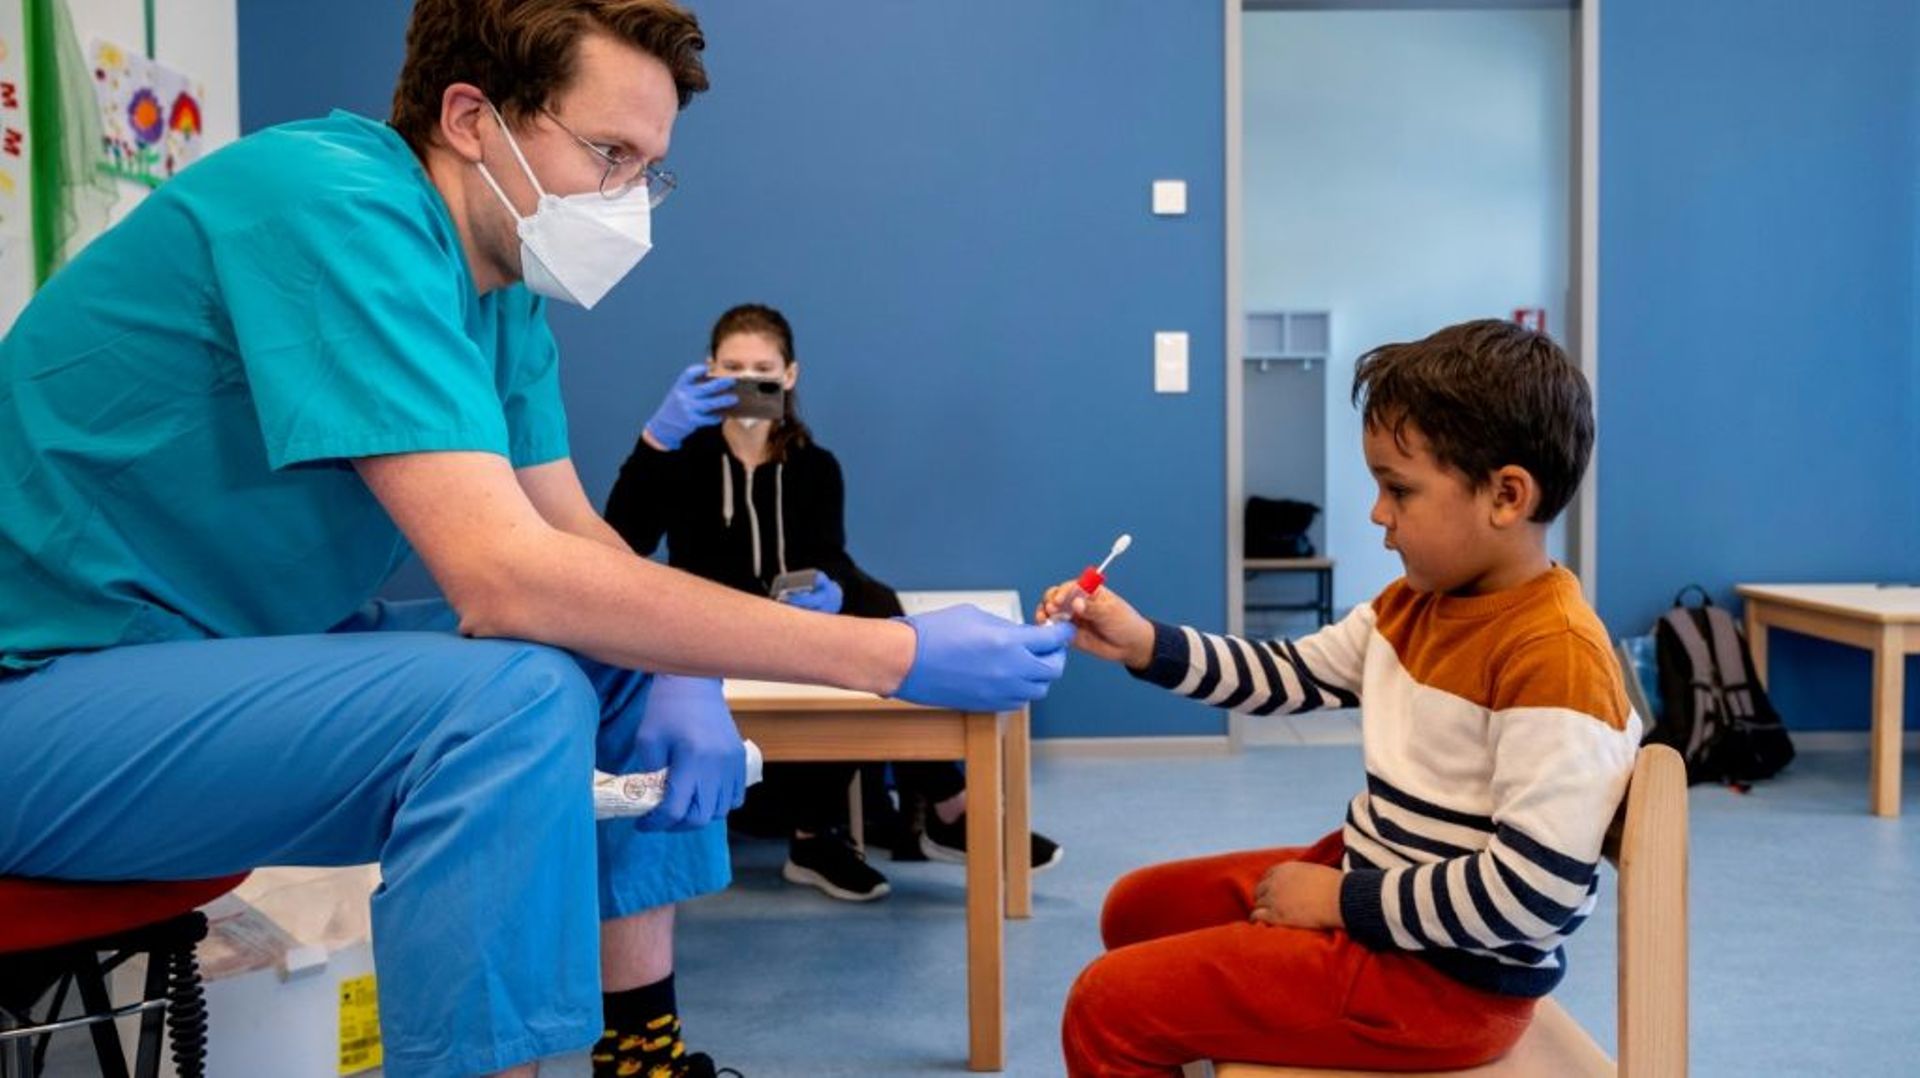 Un soignant tend une sucette à un jeune garçon pour le tester au Covid-19, dans un jardin d'enfants à Vienne, le 28 avril 2021